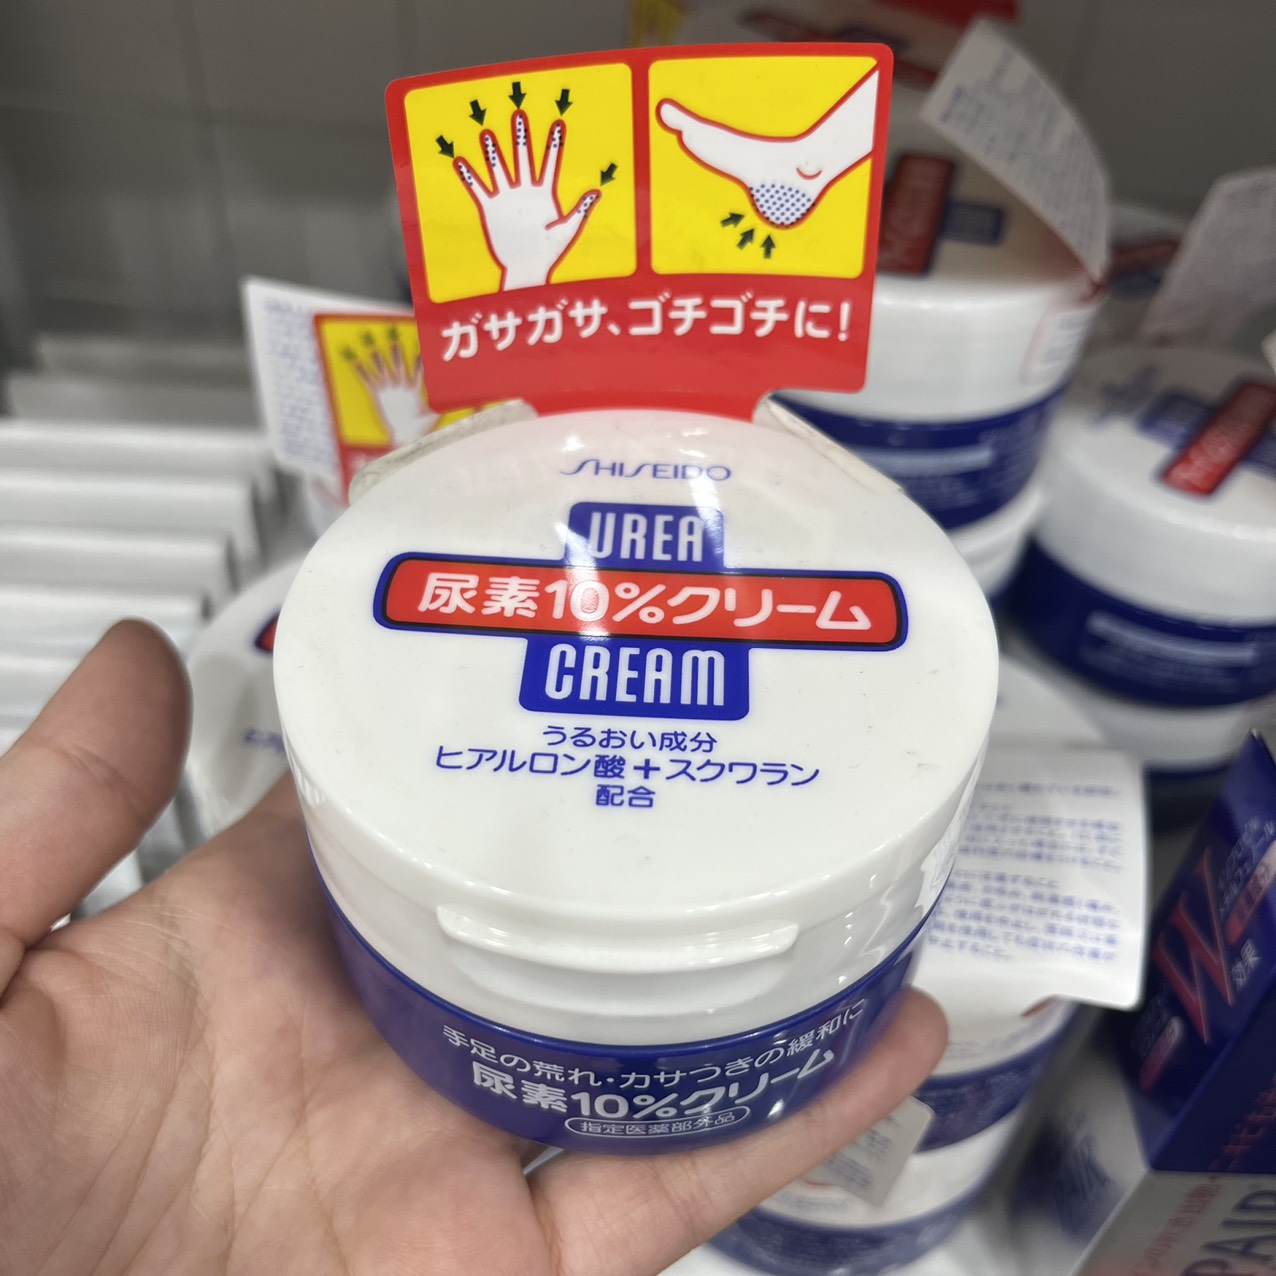 Kem nứt gót chân Nhật Bản, kem nẻ Urea Cream 100g làm mềm dưỡng da tay chân